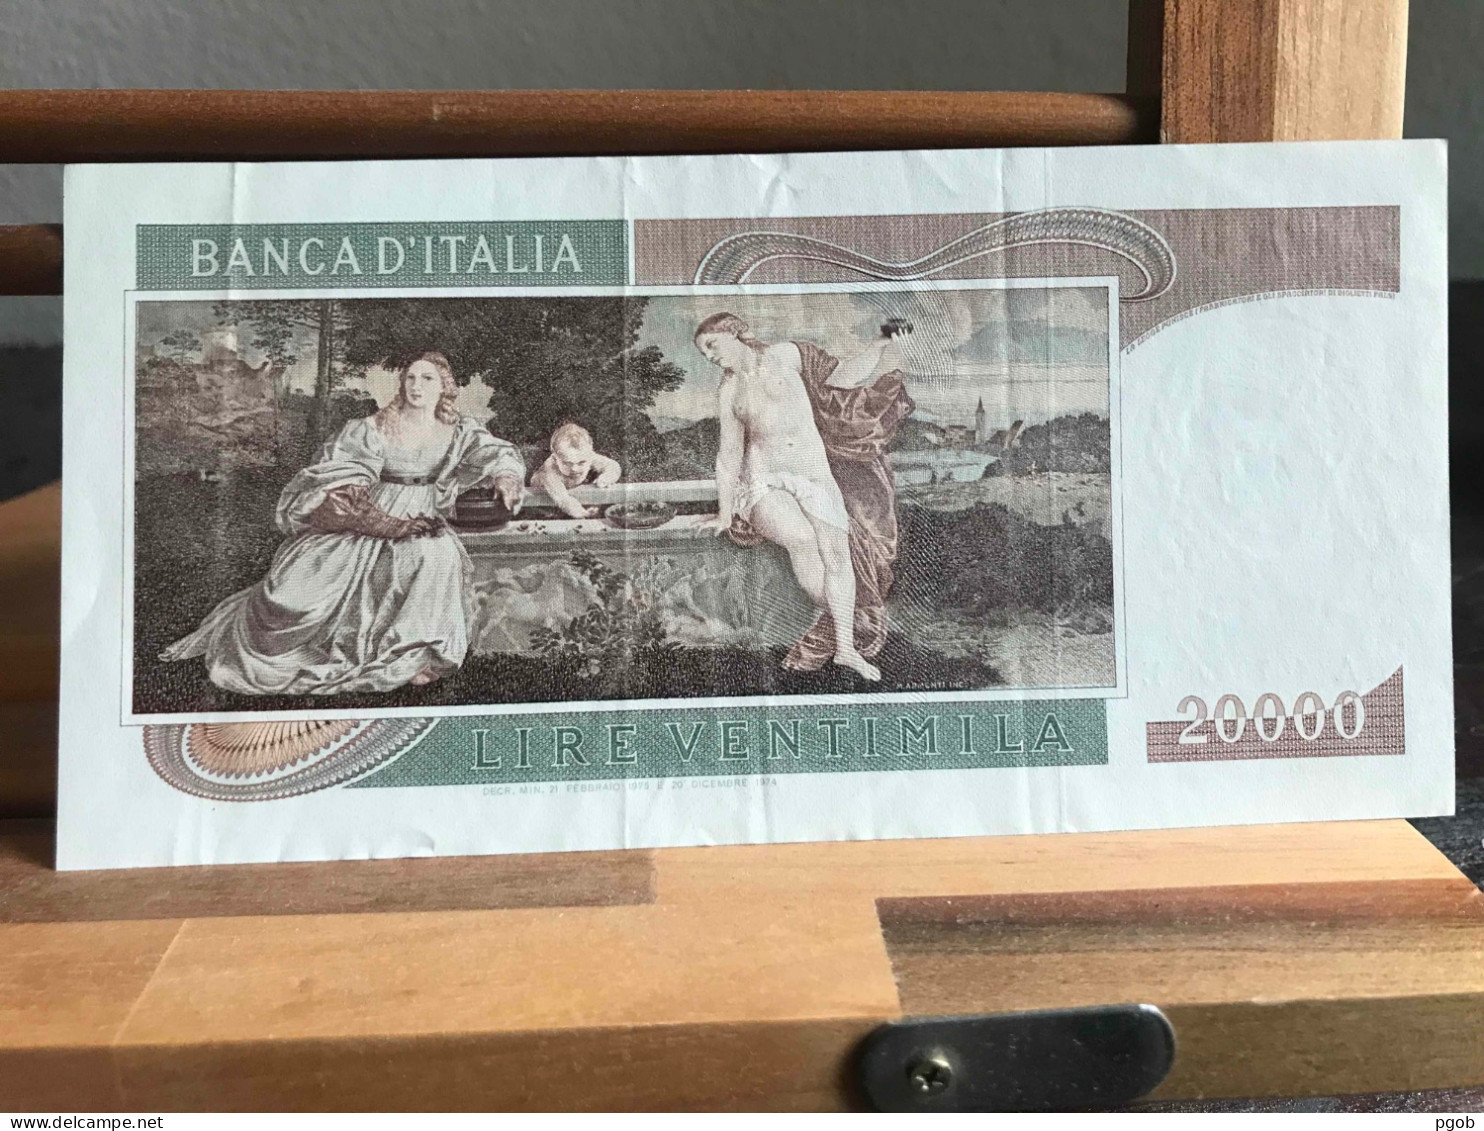 Banconota Da Lire 20000 Tiziano - 20000 Lira